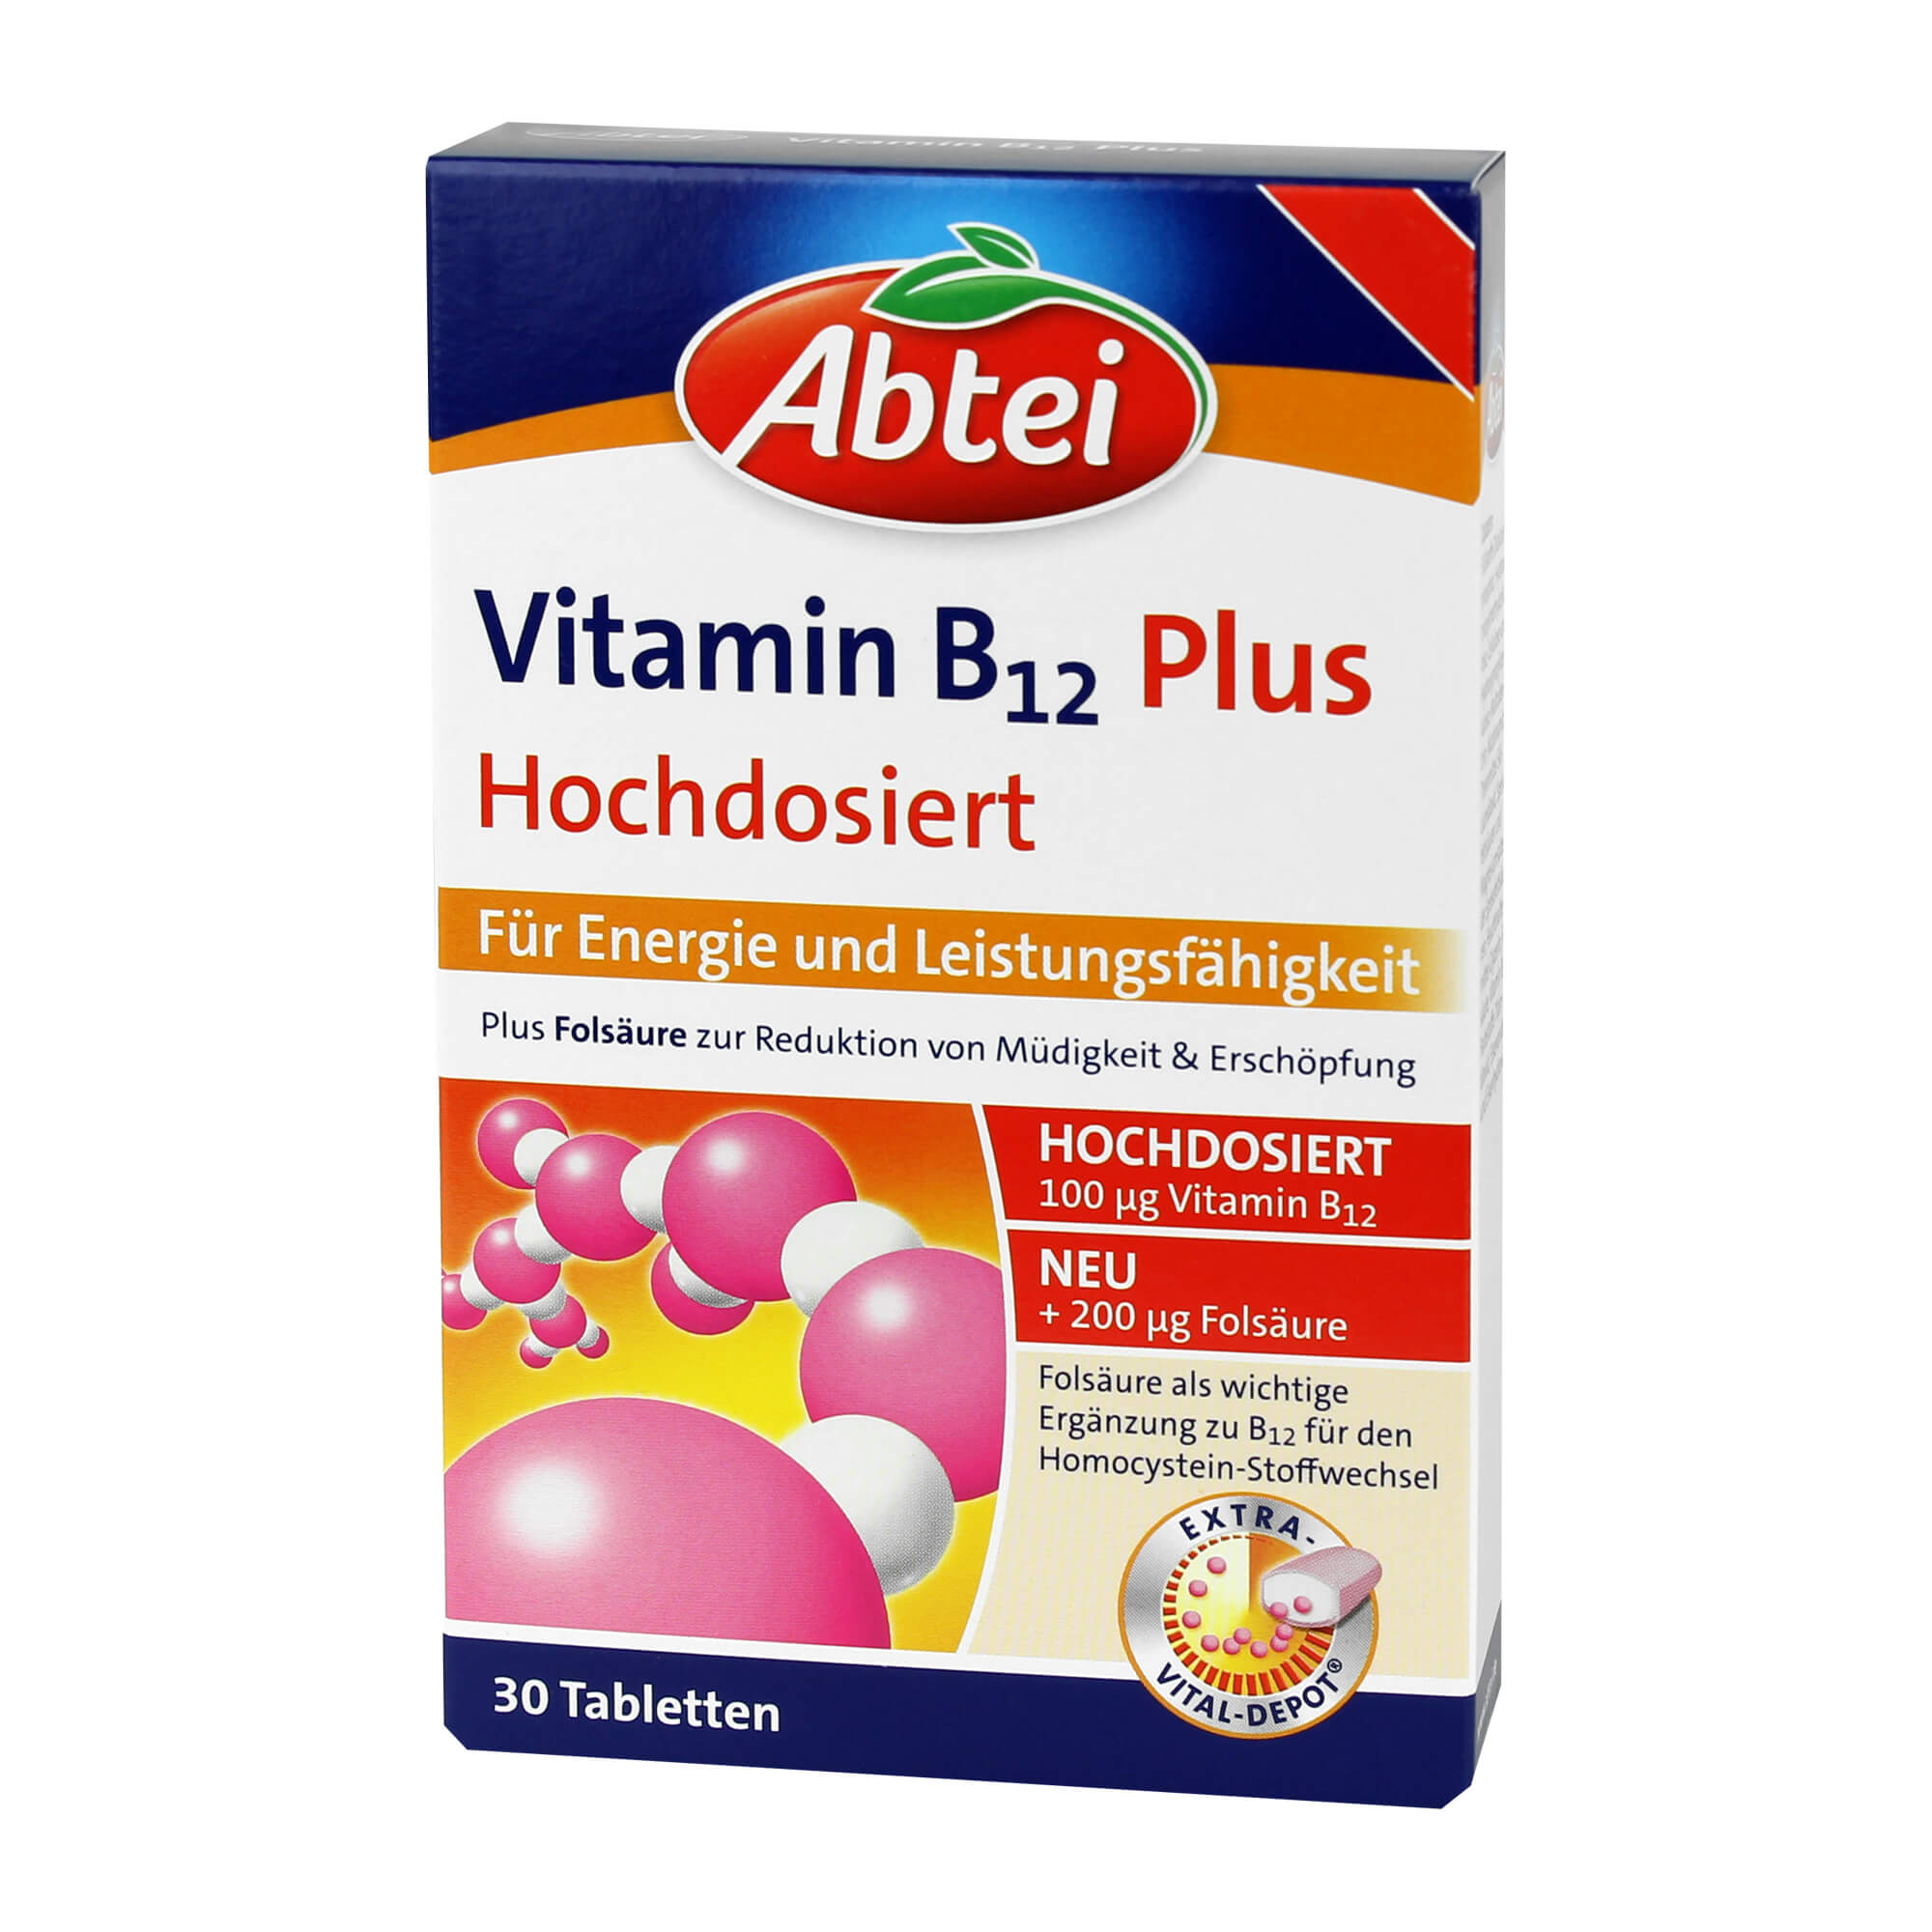 Nahrungsergänzungsmittel mit Vitamin B12, Niacin und Folsäure.